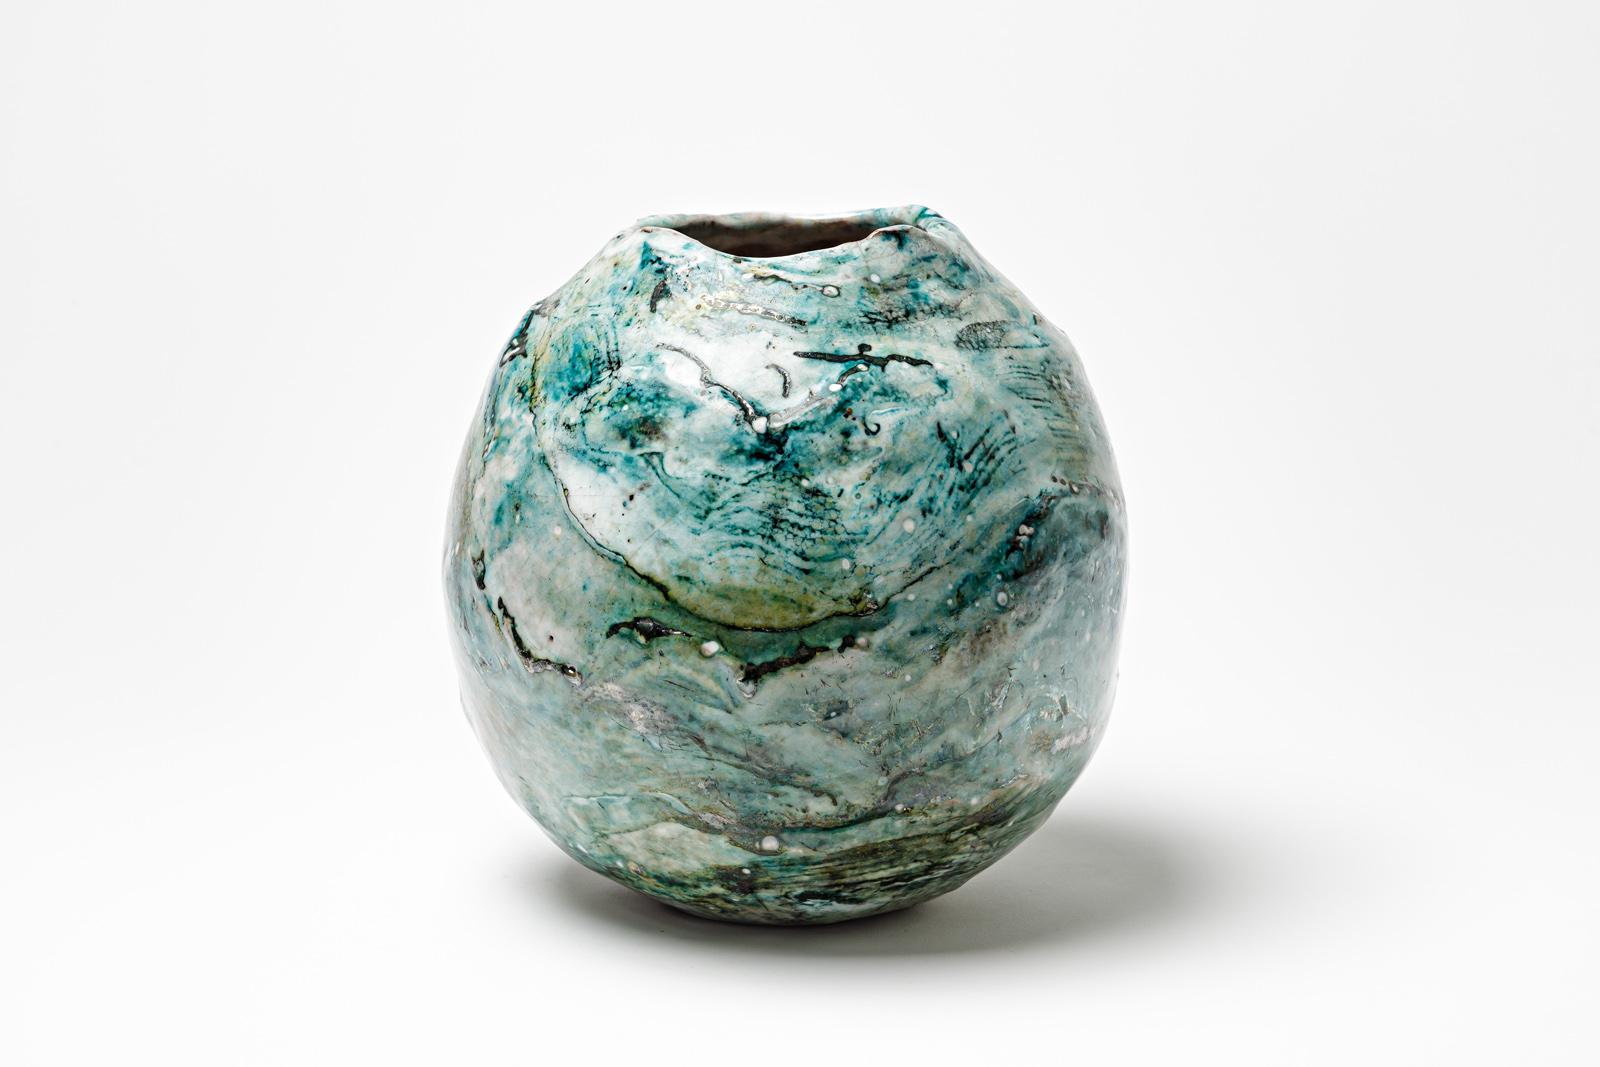 Vase aus blau und weiß glasierter Keramik von Gisèle Buthod Garçon. 
Raku gebrannt. Künstlermonogramm unter dem Sockel. CIRCA 1980-1990. 
H : 8,7' x 7,4' Zoll.